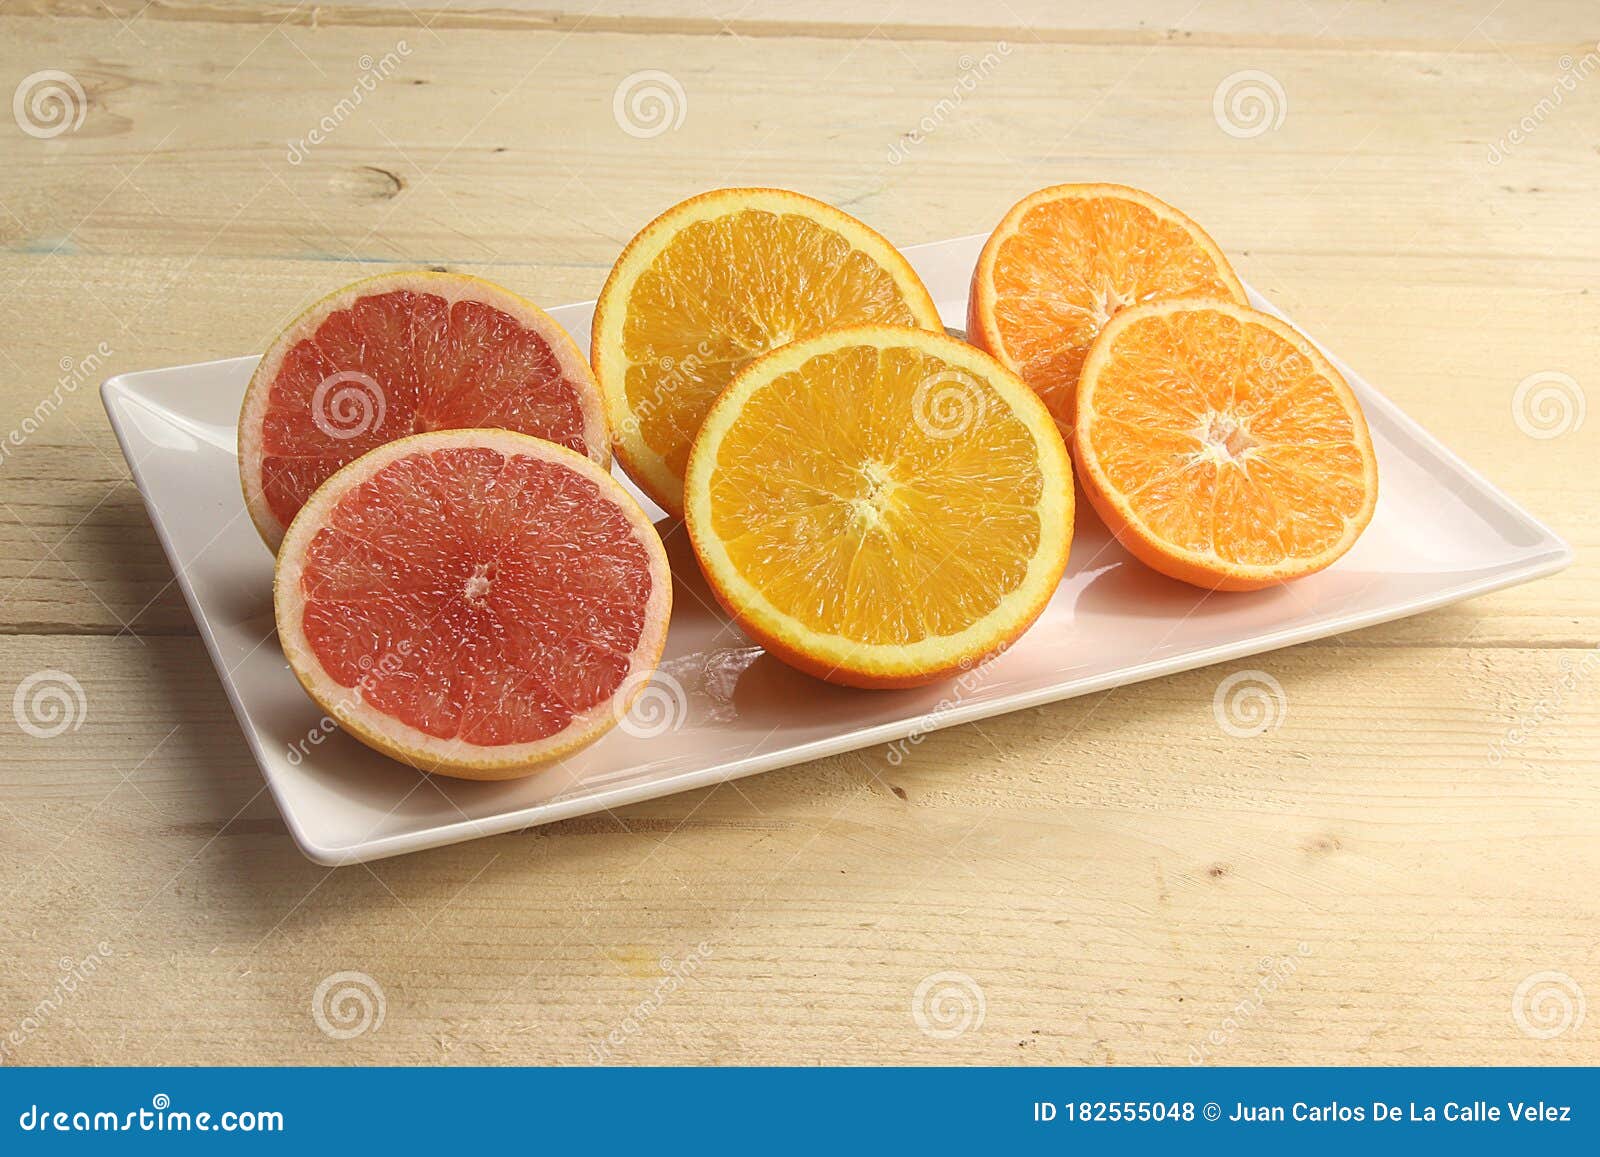 variedad de frutas cÃÂ­tricas como pomelo naranja y mandarina